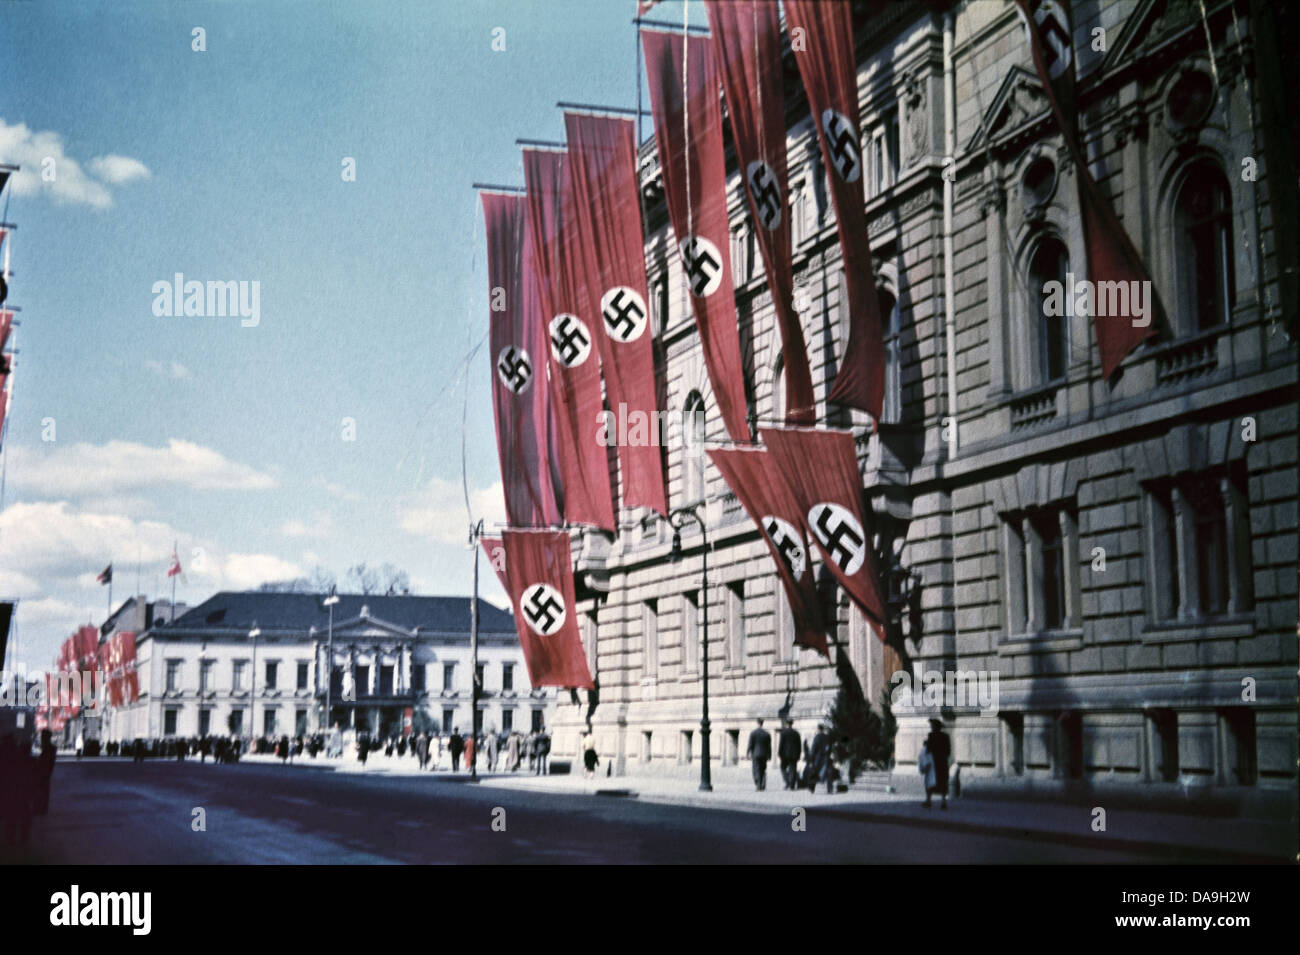 Tercer Reich nazi, Nacional Socialista, el nacionalsocialismo, Alemania, 1942, Berlín, Europa, 1 de mayo, día de fiesta, la ciudad jubileo, 1937 Foto de stock